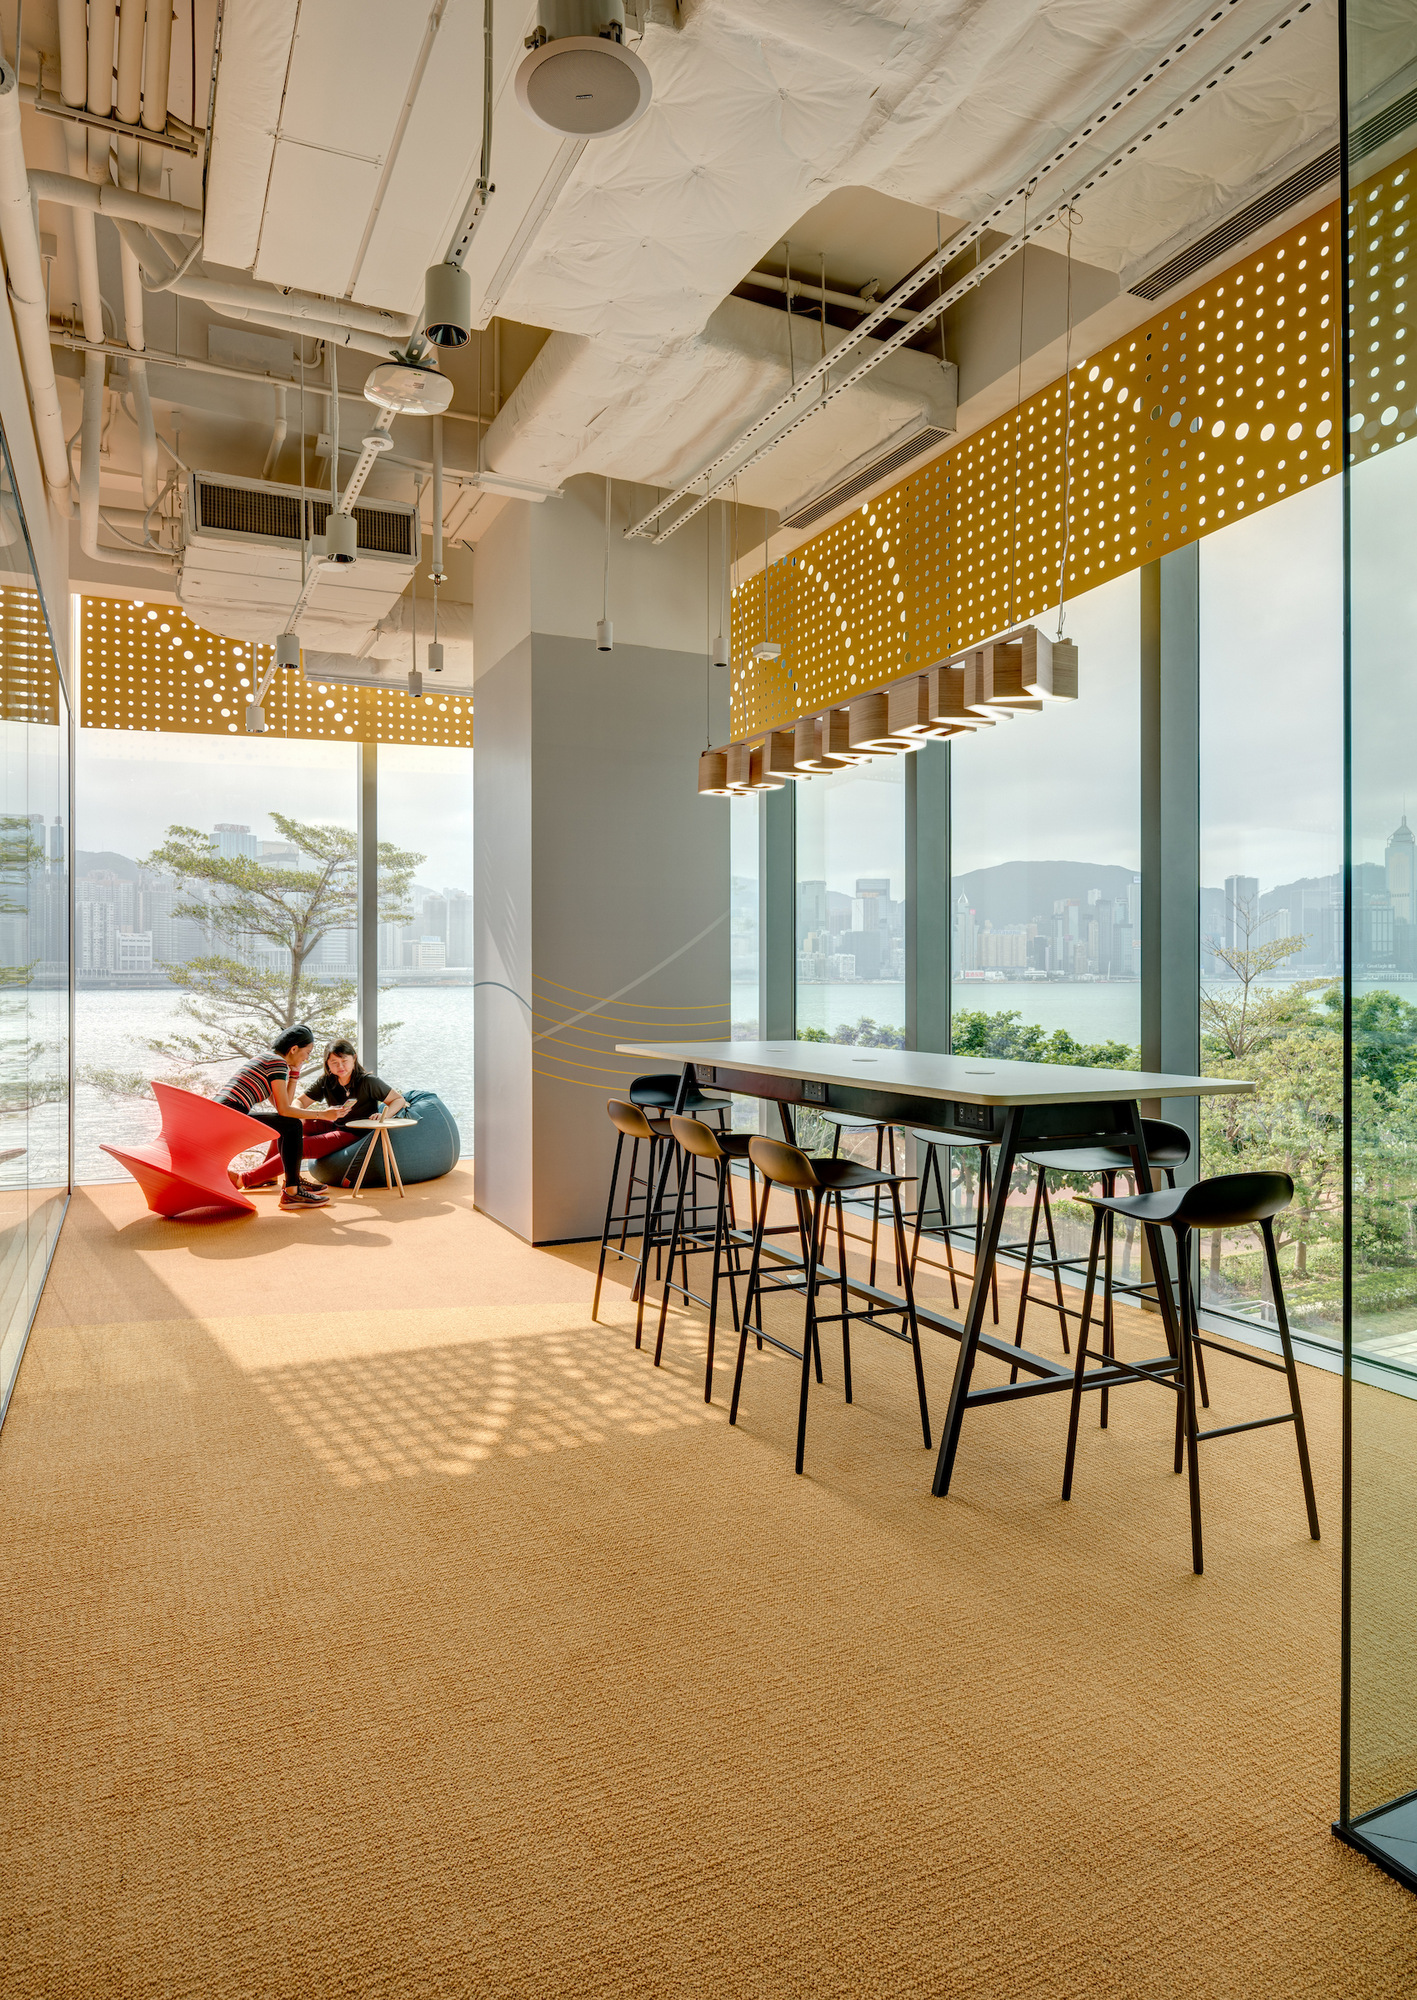 图片[11]|SunLife香港办事处|ART-Arrakis | 建筑室内设计的创新与灵感